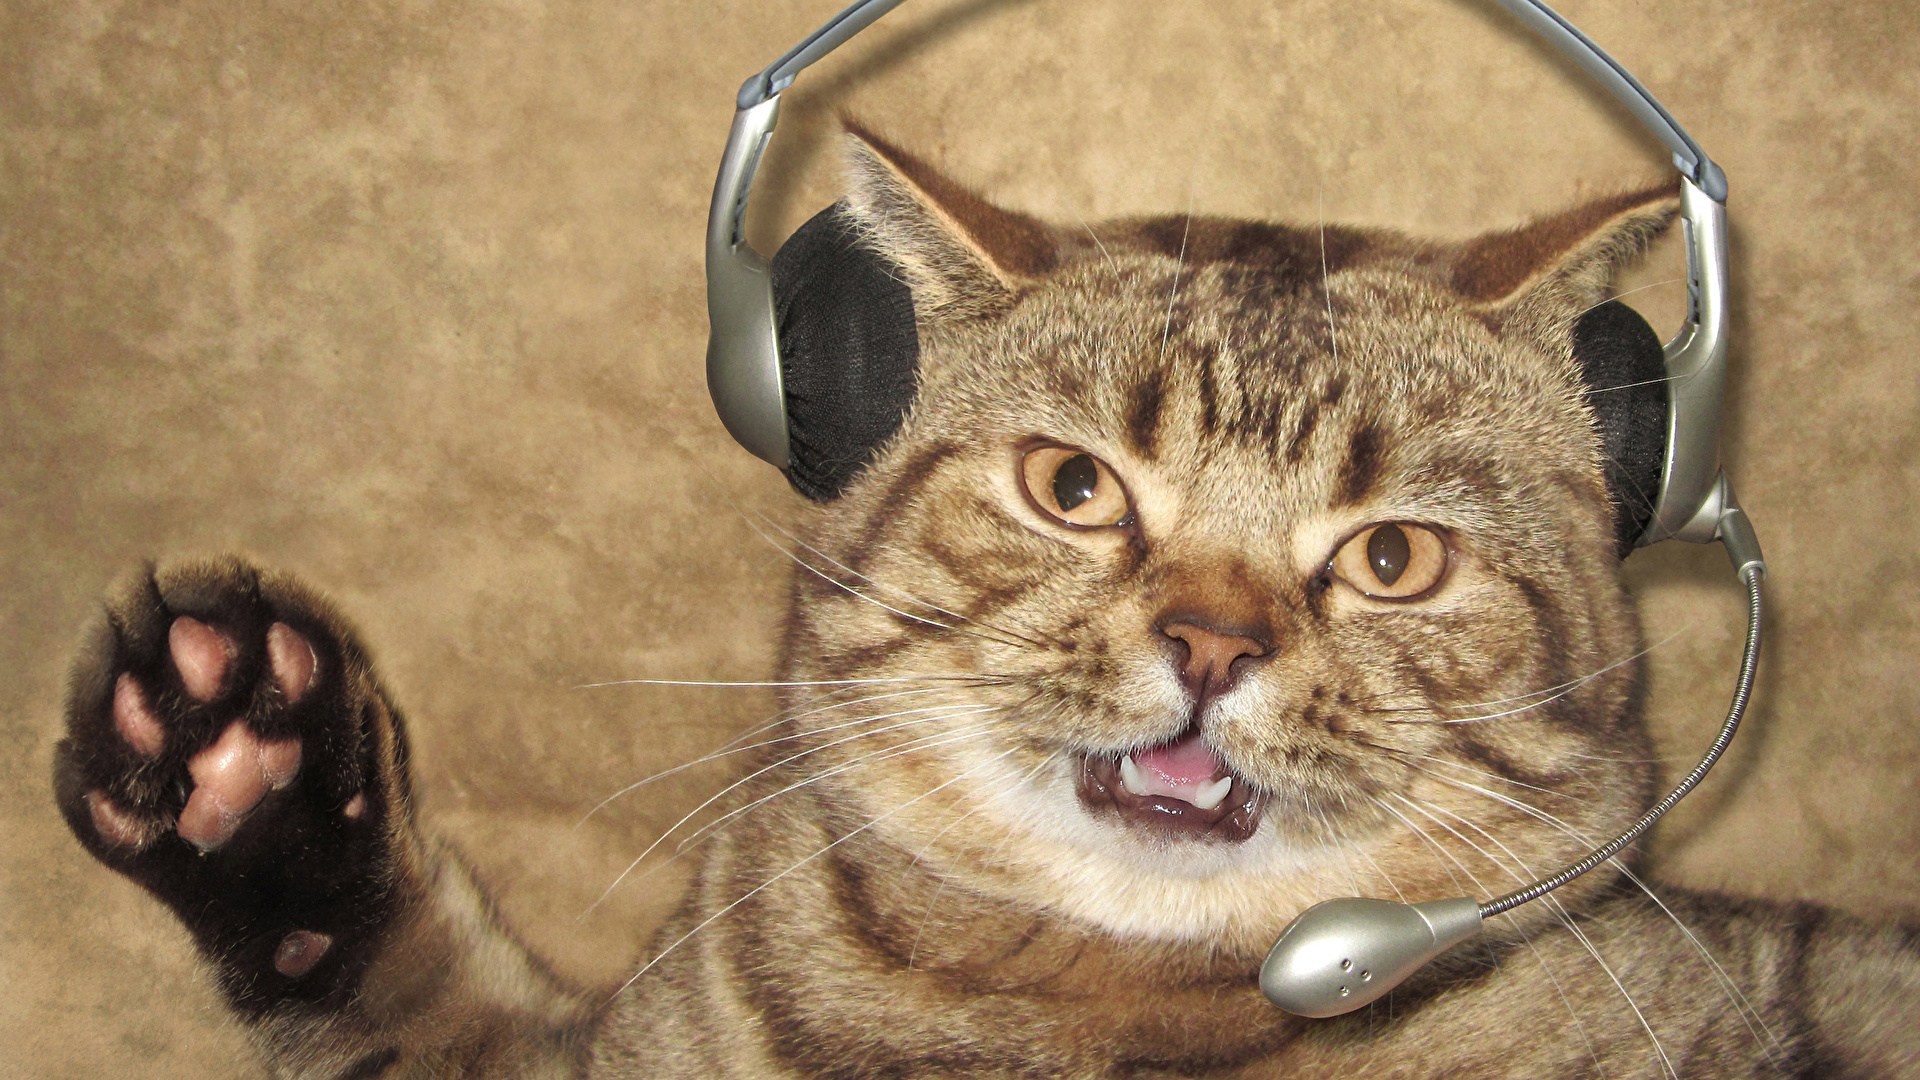 壁紙 1920x1080 クリエイティブ 飼い猫 おもしろい ヘッドフォン マイクロフォン 動物 ダウンロード 写真